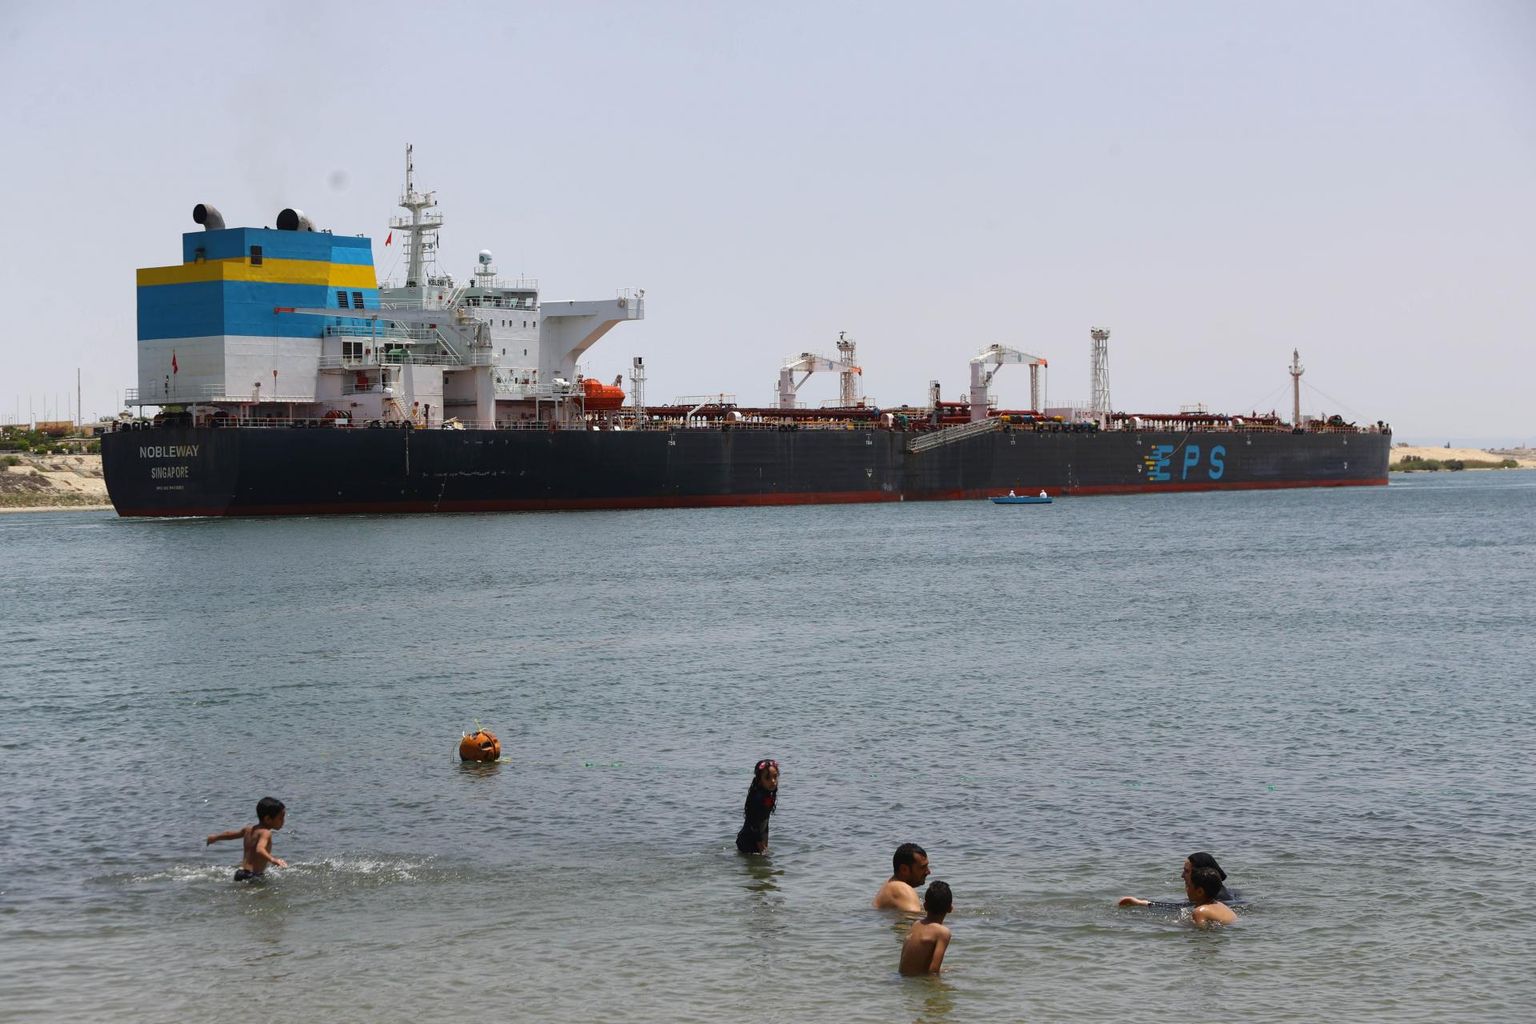 Suessi kanaliamet ning ligi nädala kanalit blokeerinud hiiglasliku konteinerlaeva Ever Given omanikud ja kindlustajad jõudsid põhimõttelisele kokkuleppele rahalise vaidluse lahendamiseks, teatasid kolmapäeval mõlema poole esindajad.